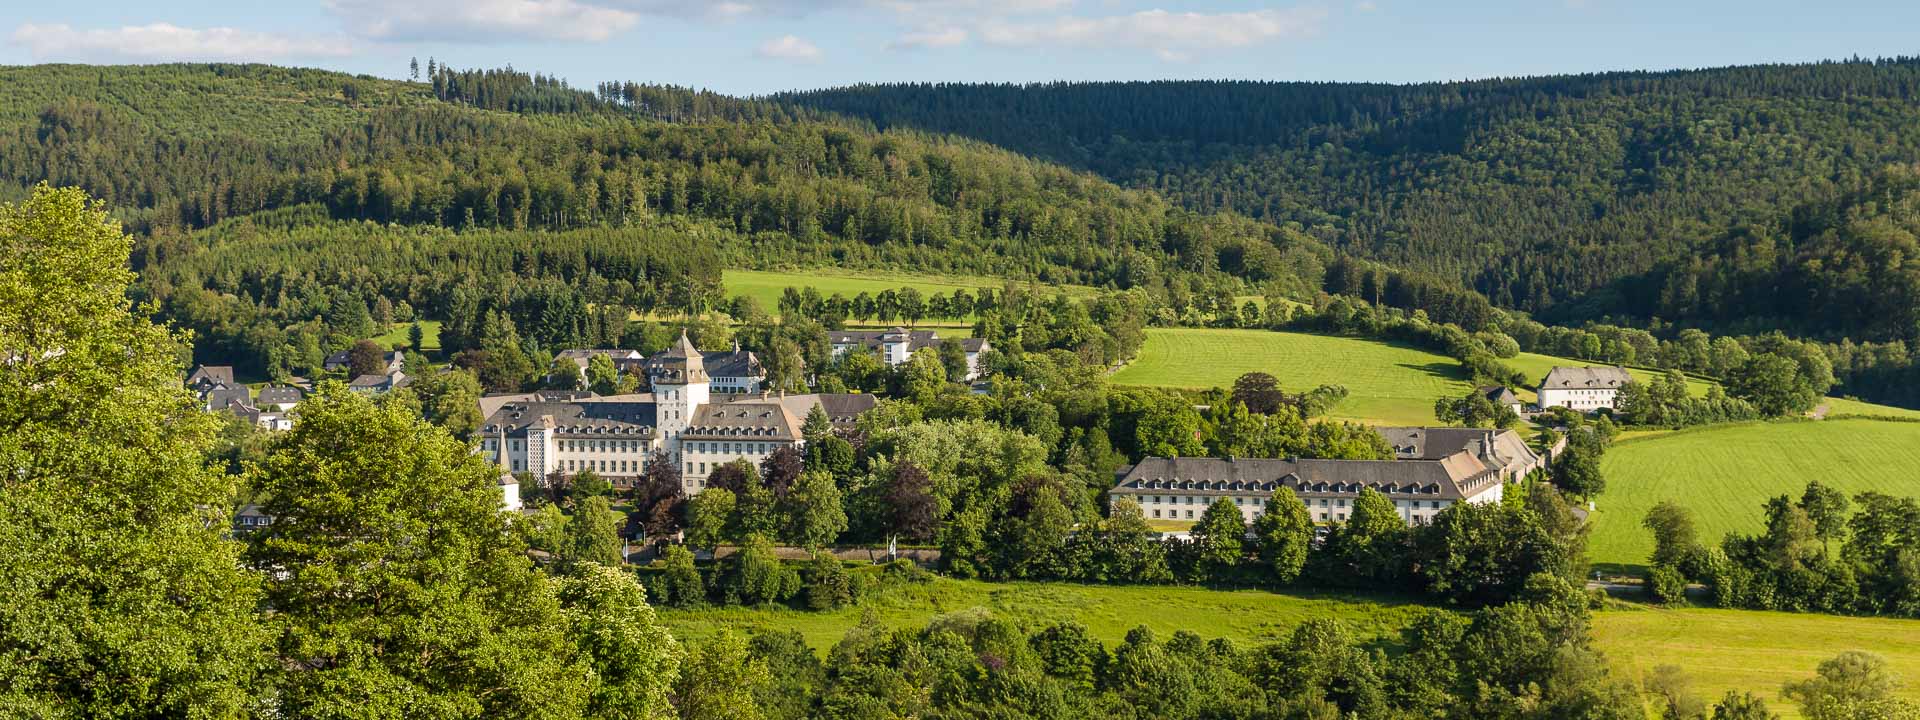 Kloster in Grafschaft